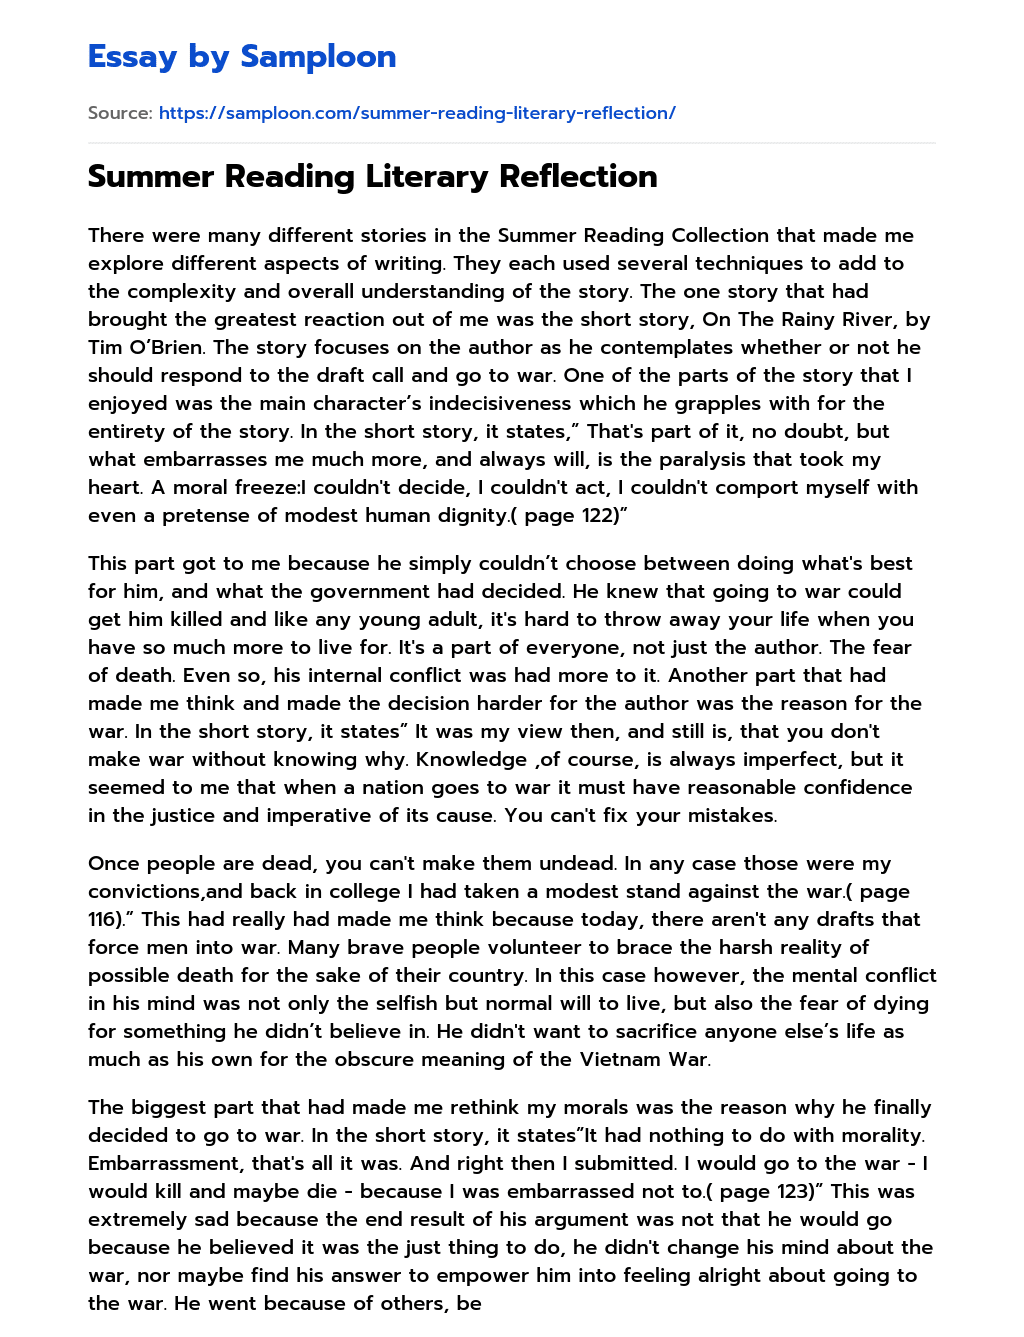 Summer Reading Literary Reflection essay